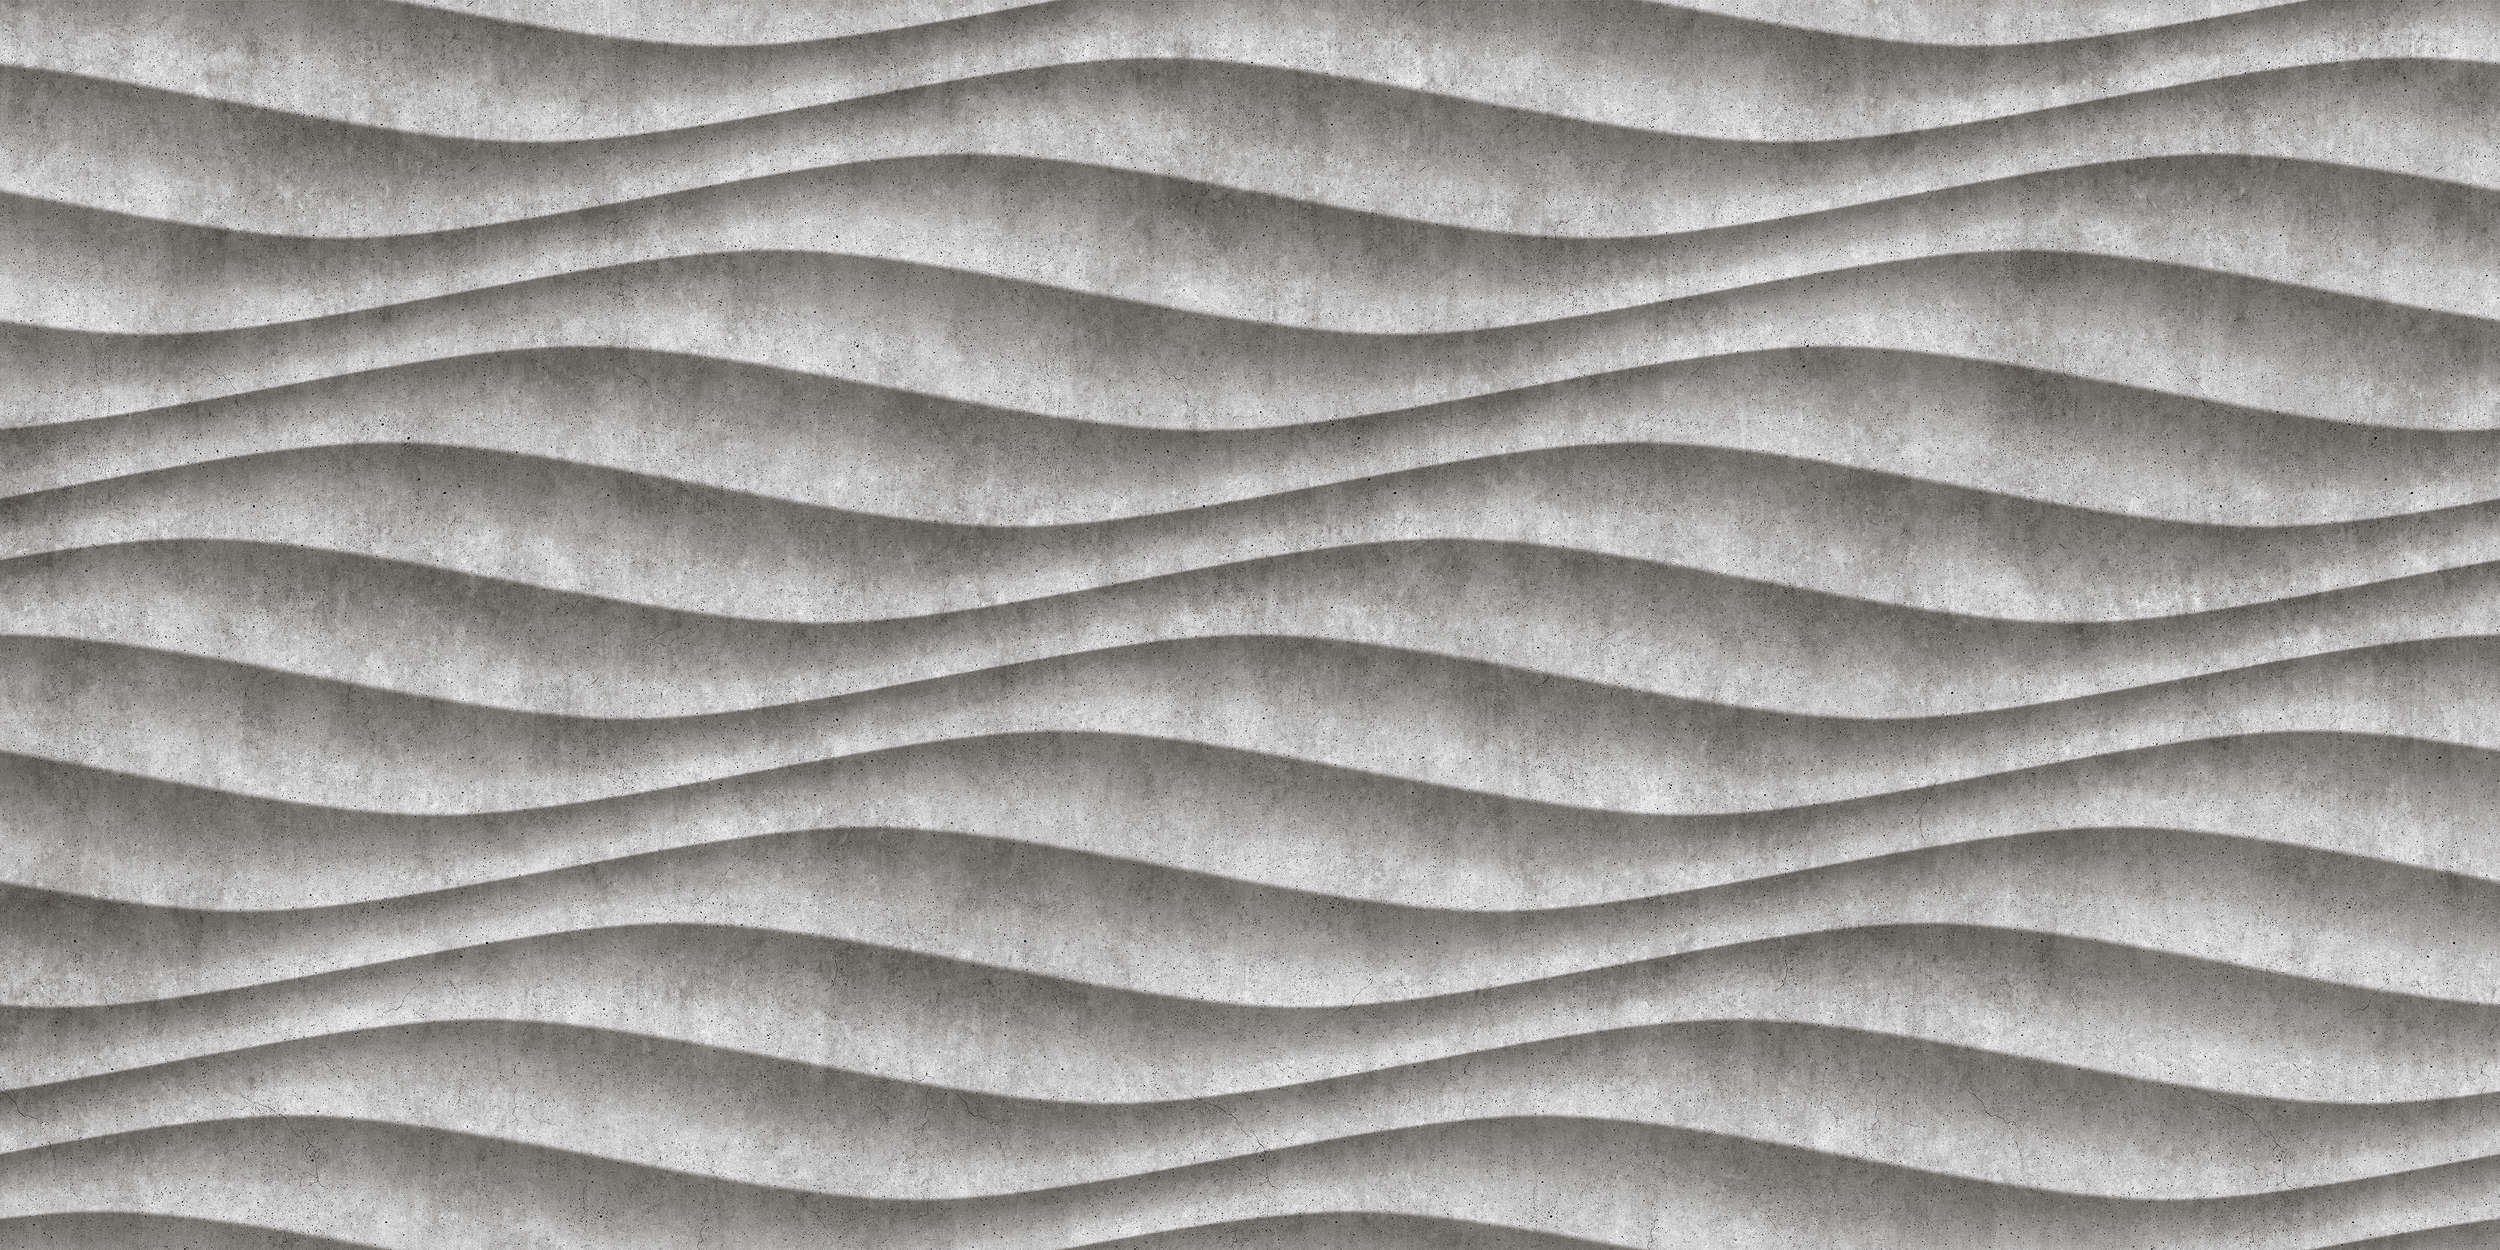             Canyon 2 - Cool 3D Concrete Waves Onderlaag behang - Grijs, Zwart | Matte Gladde Vlieseline
        